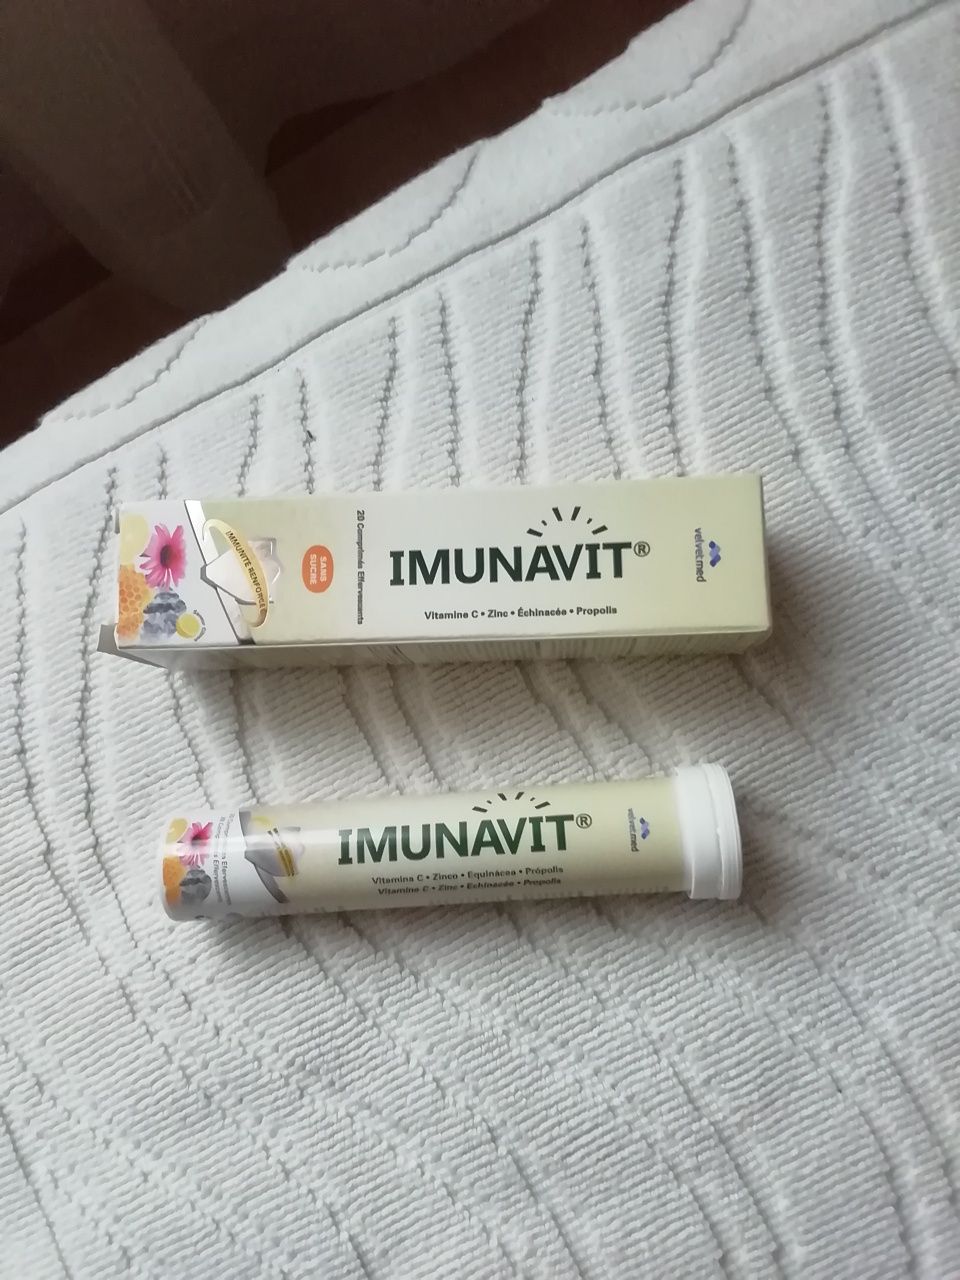 Vitaminas Imunavit, selada